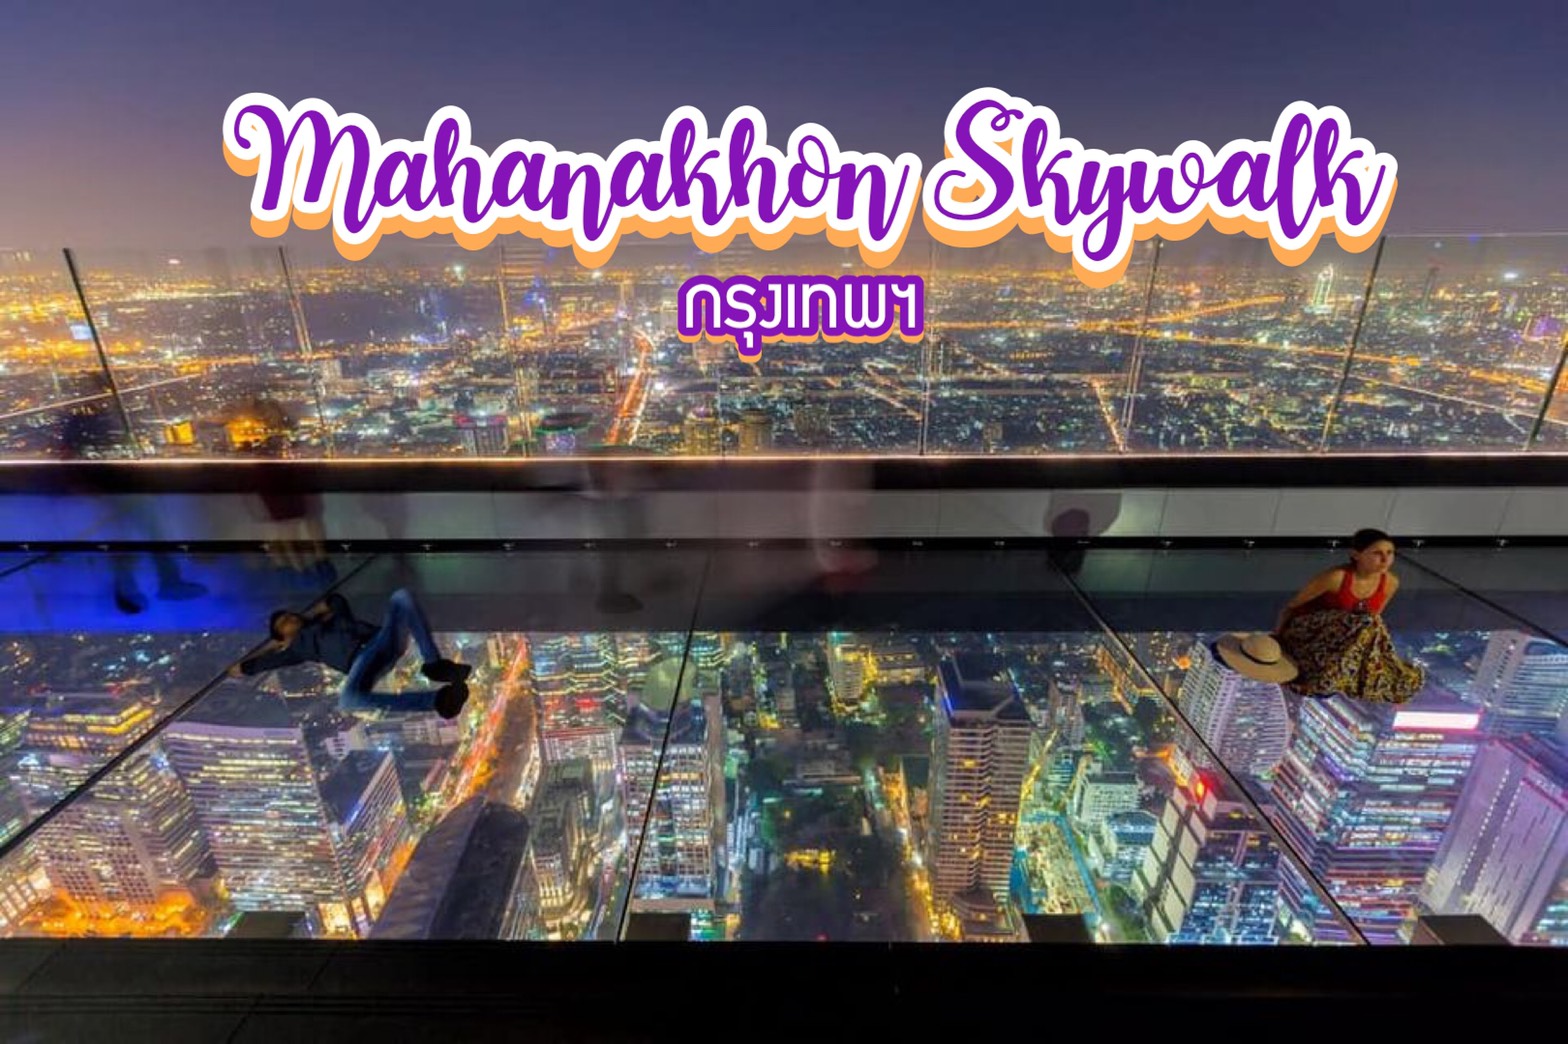 มหานคร สกายวอร์ค (Mahanakhon Skywalk) กรุงเทพฯ